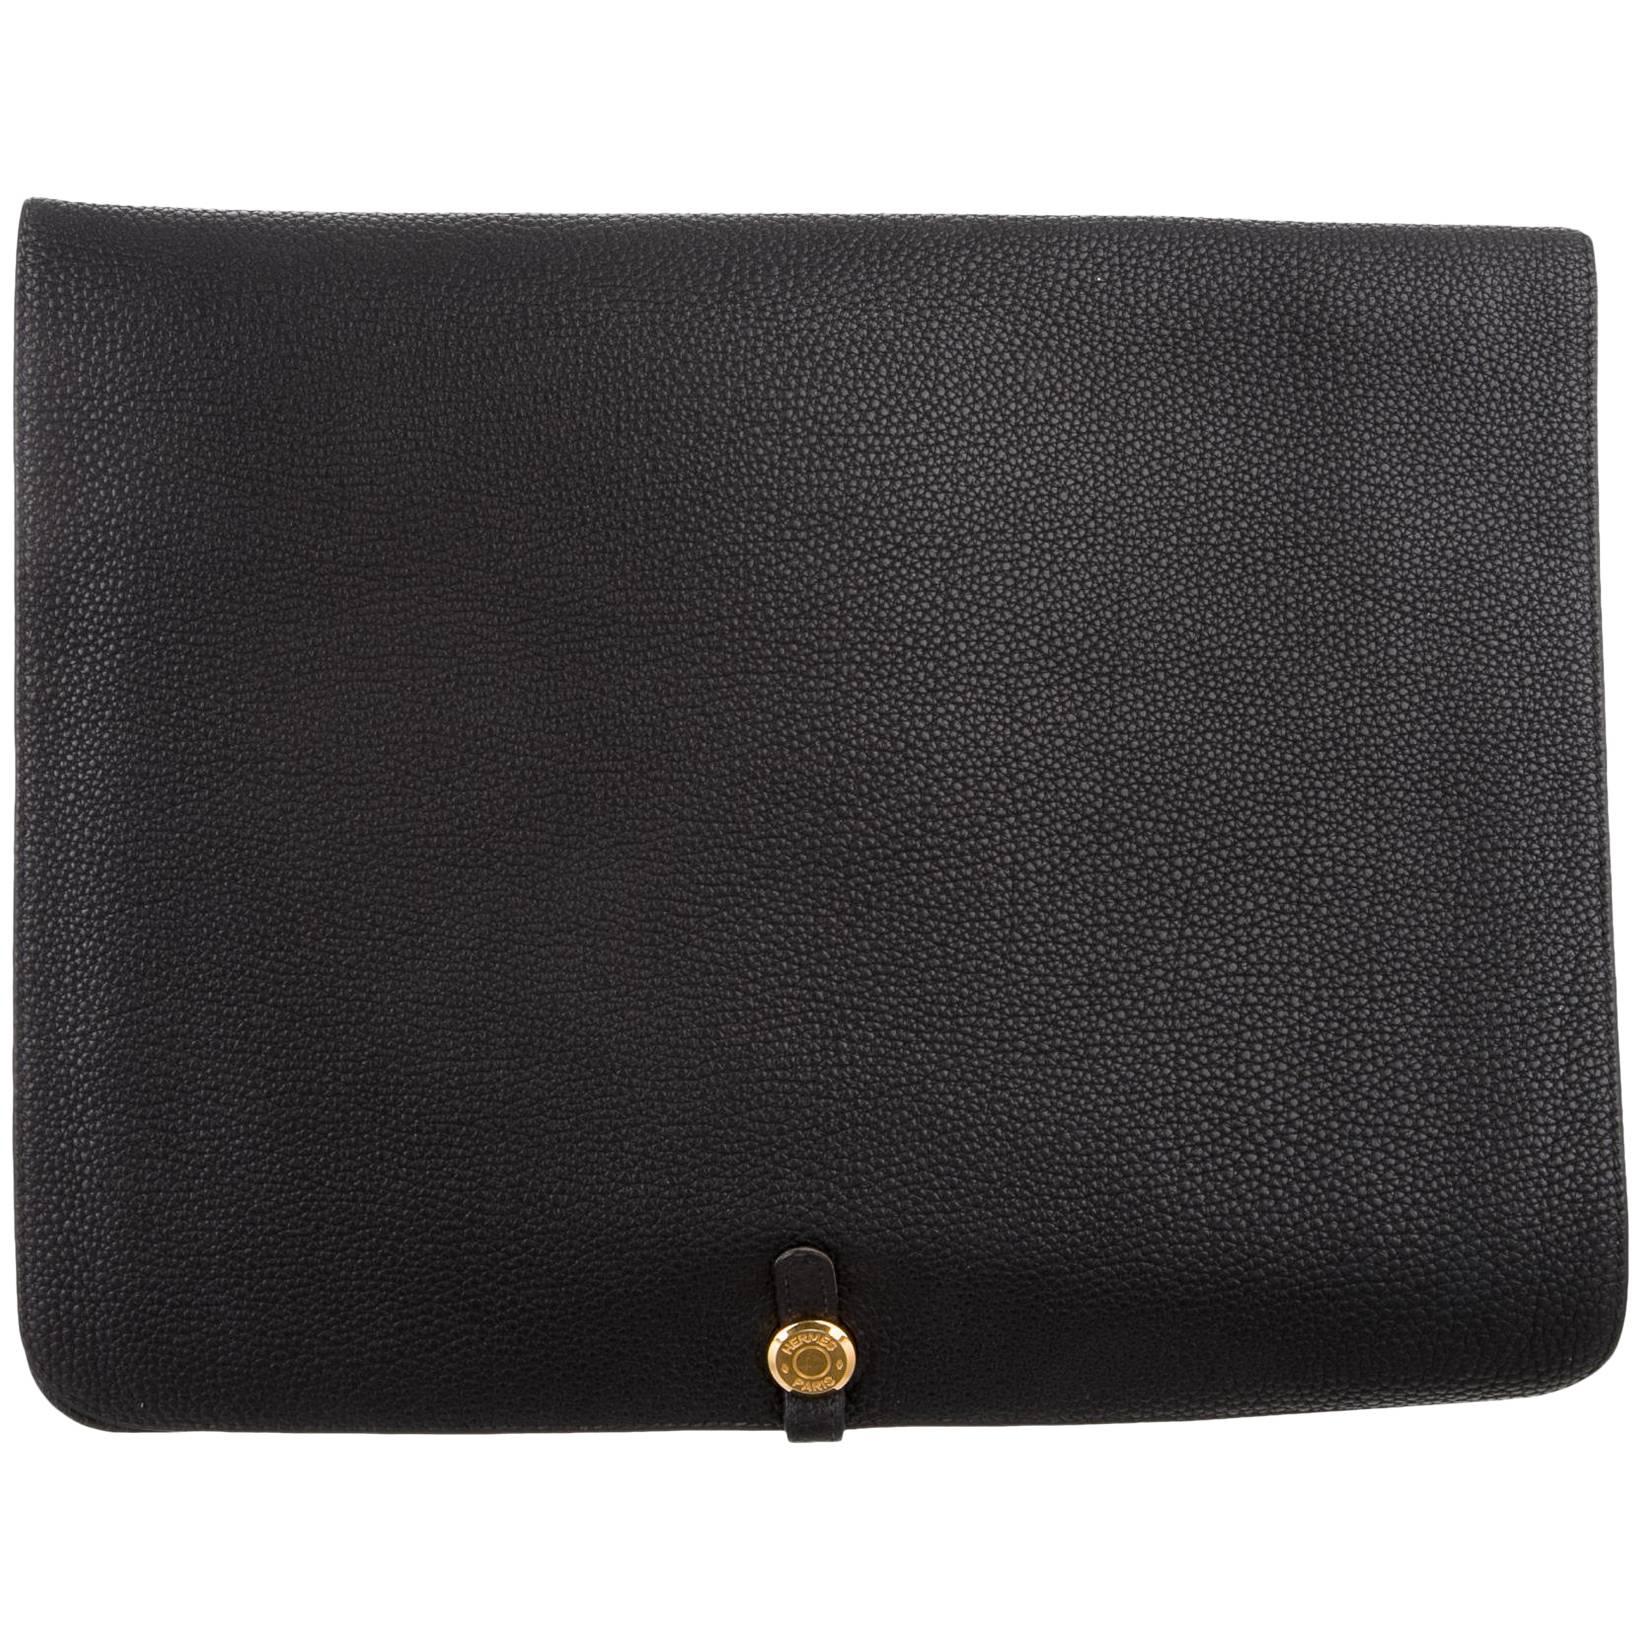  Hermes Black Leather Gold Large LapTop Business Envelope Clutch CarryAll Bag